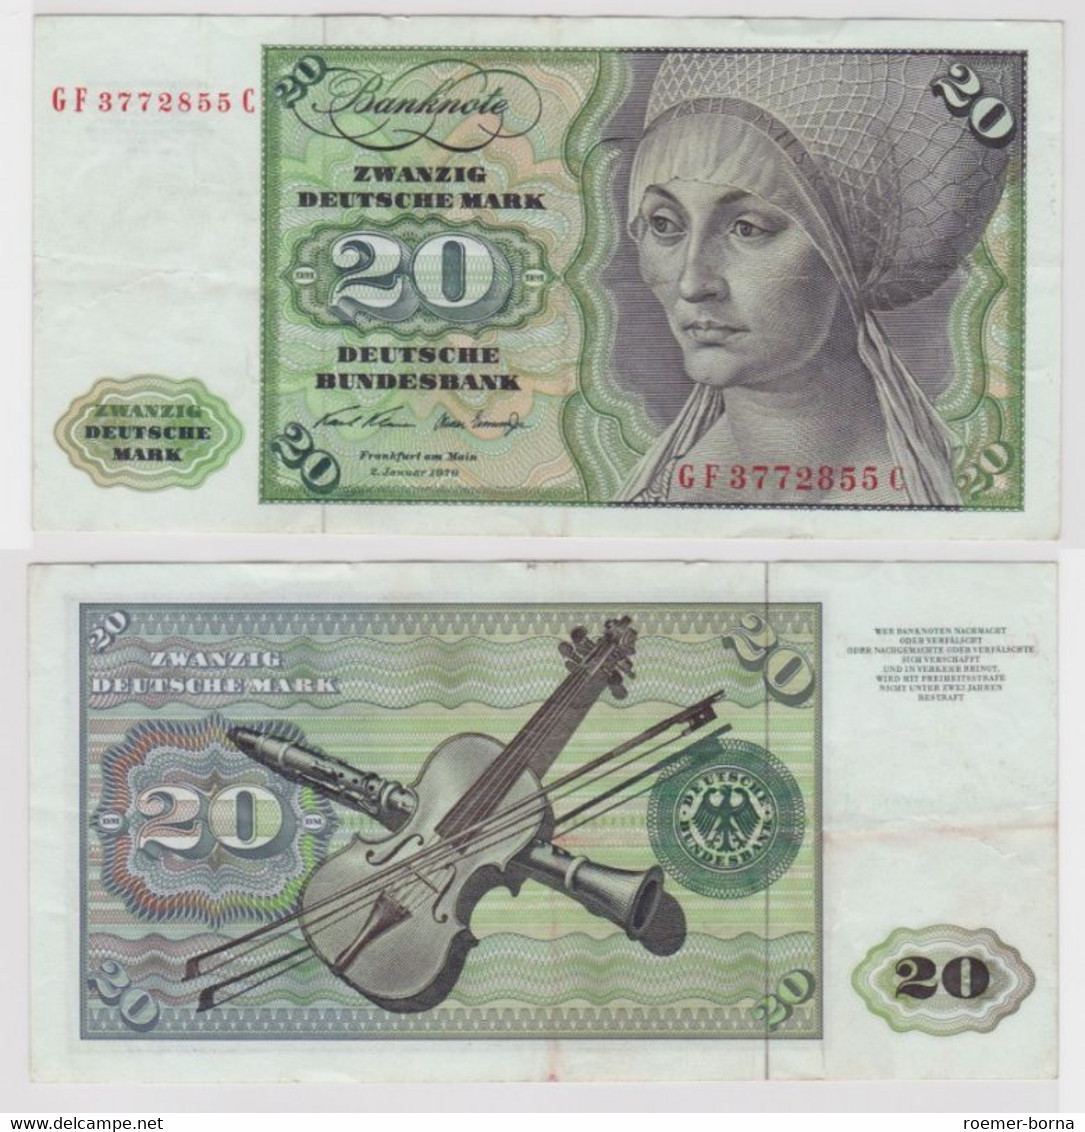 T144592 Banknote 20 DM Deutsche Mark Ro. 271b Schein 2.Jan. 1970 KN GF 3772855 C - 20 DM